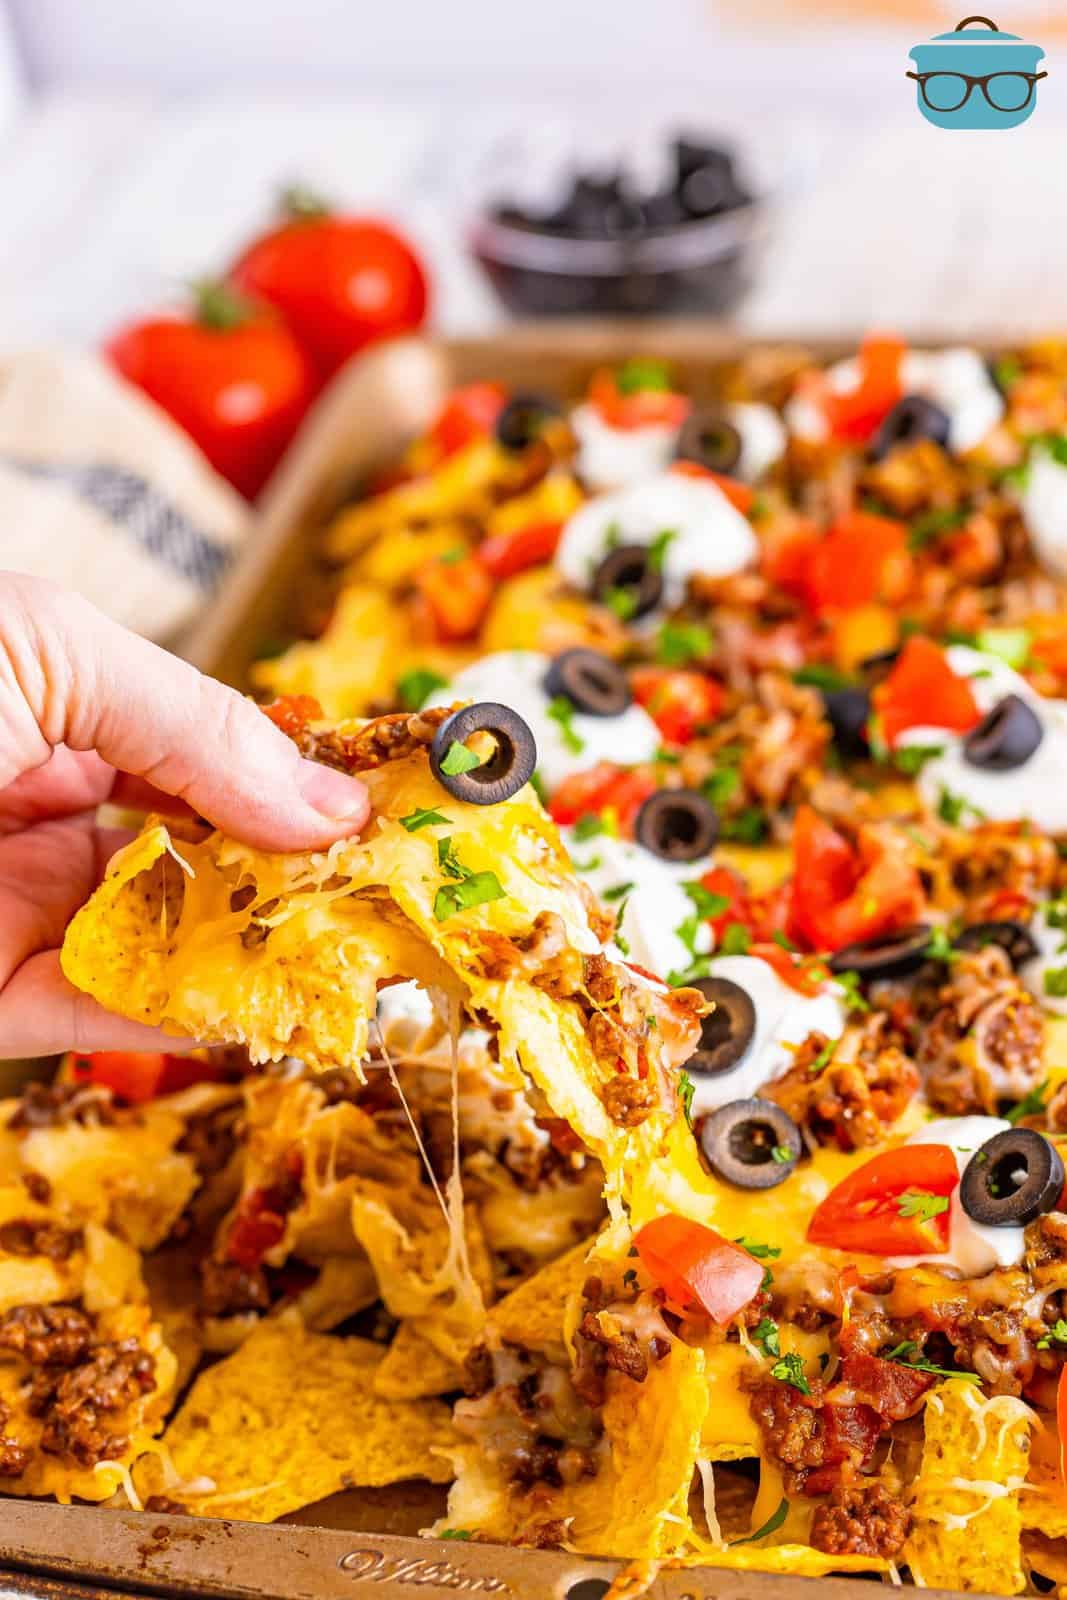 A hand holding a loaded nacho. 